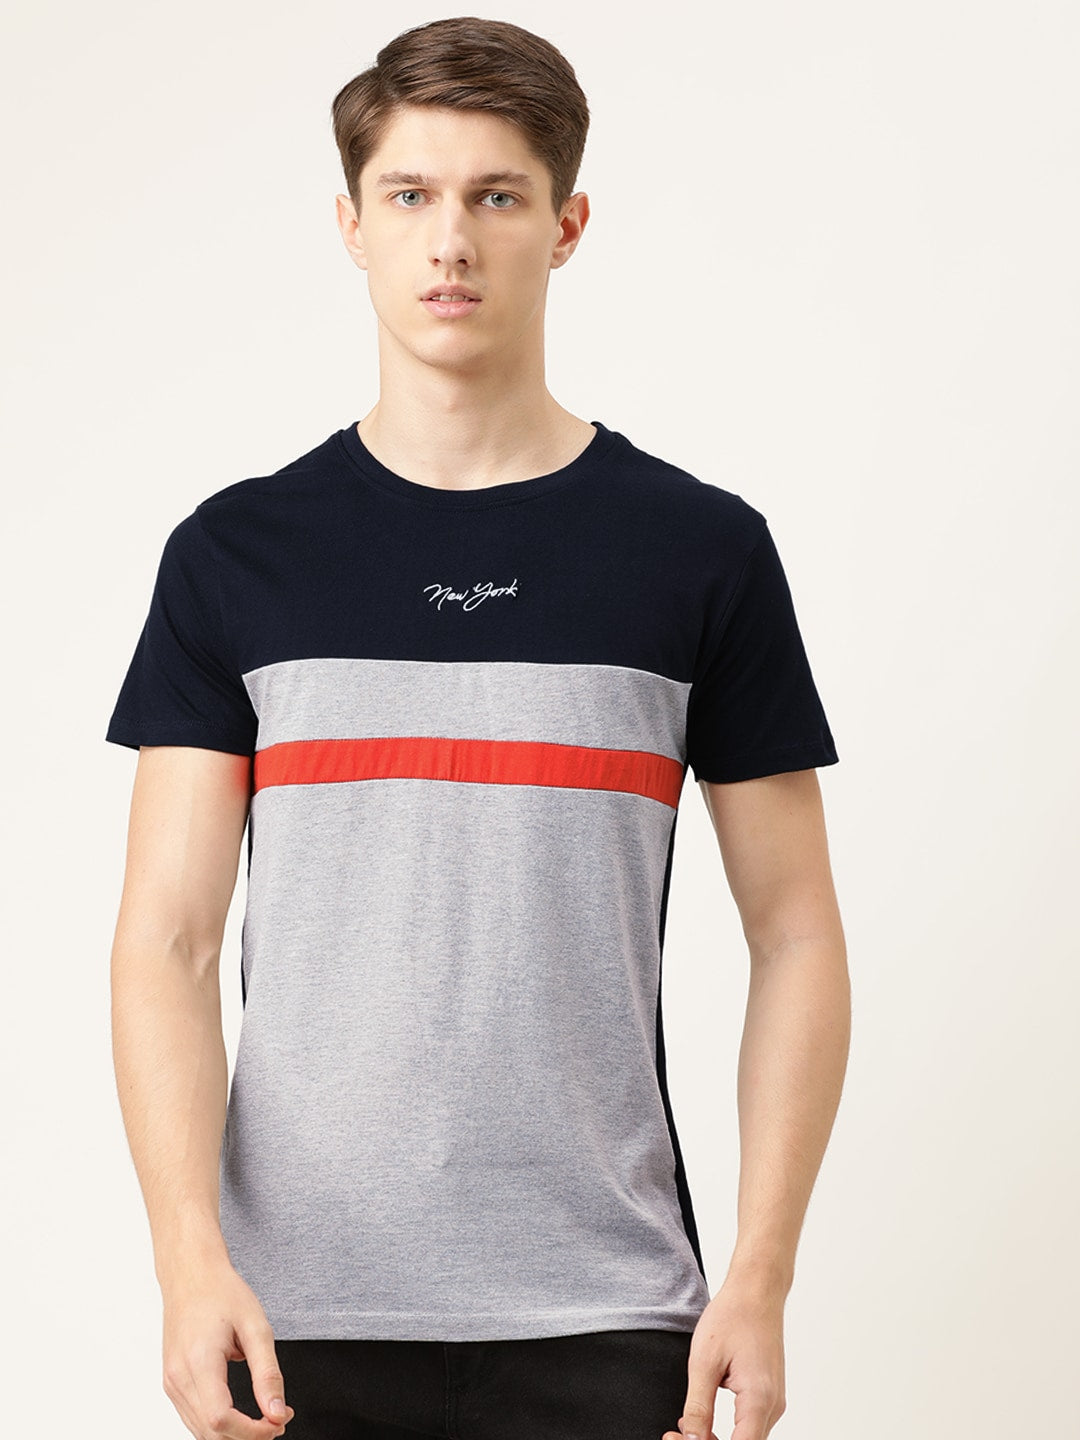 Shop Men Graphic Print T-Shirt Online.